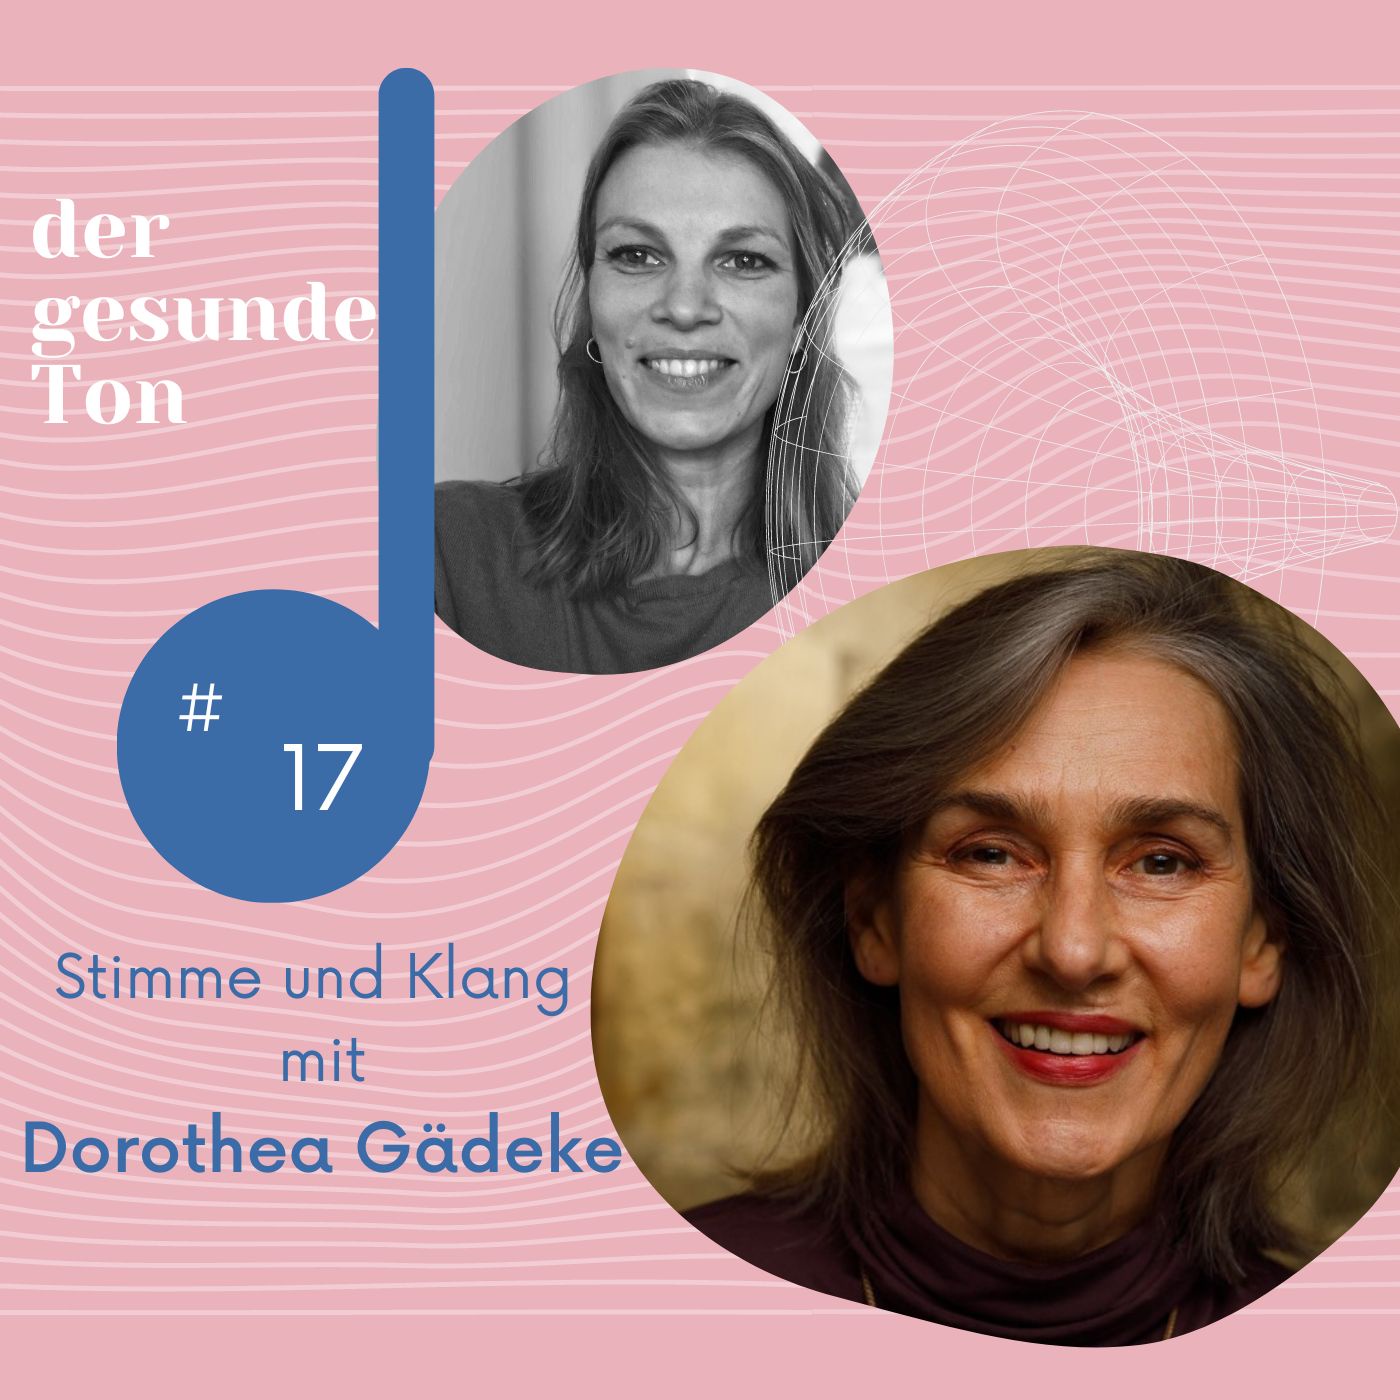 Stimme und Klang mit Dorothea Gädeke